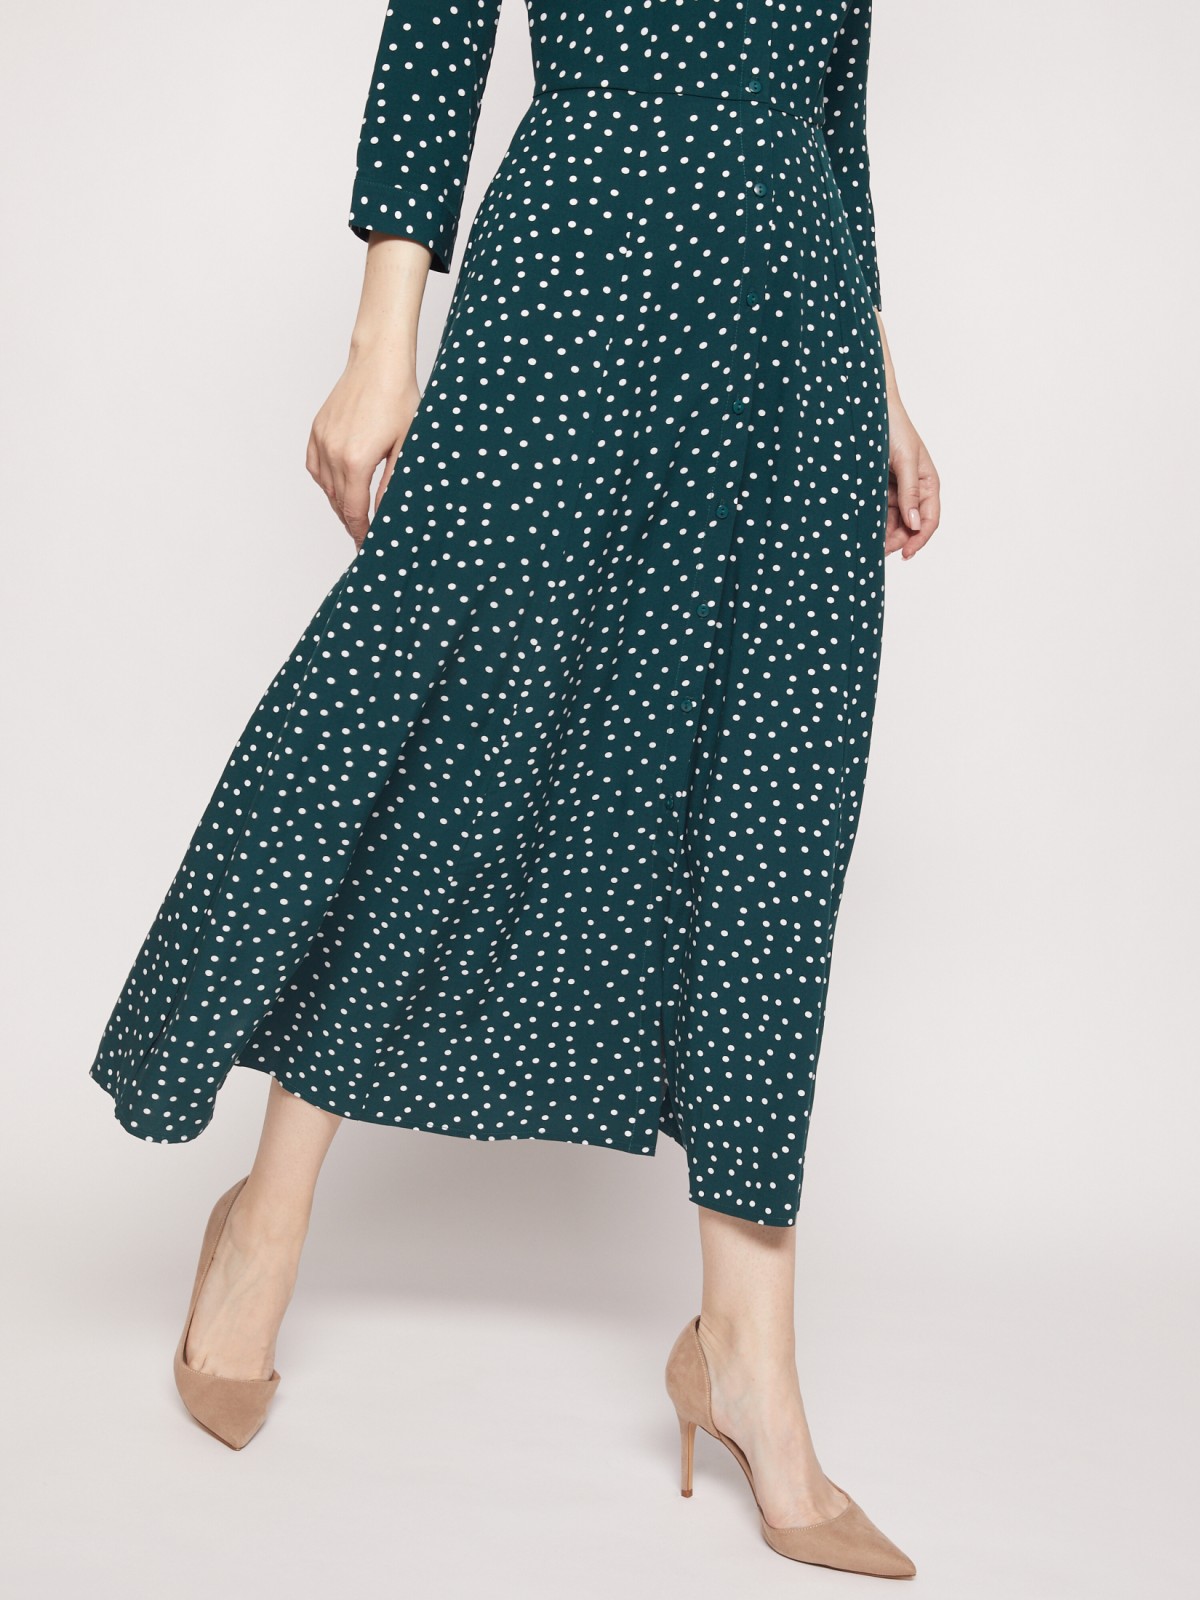 Платье-рубашка в горошек zolla 02131827Y023, цвет темно-зеленый, размер XS - фото 2